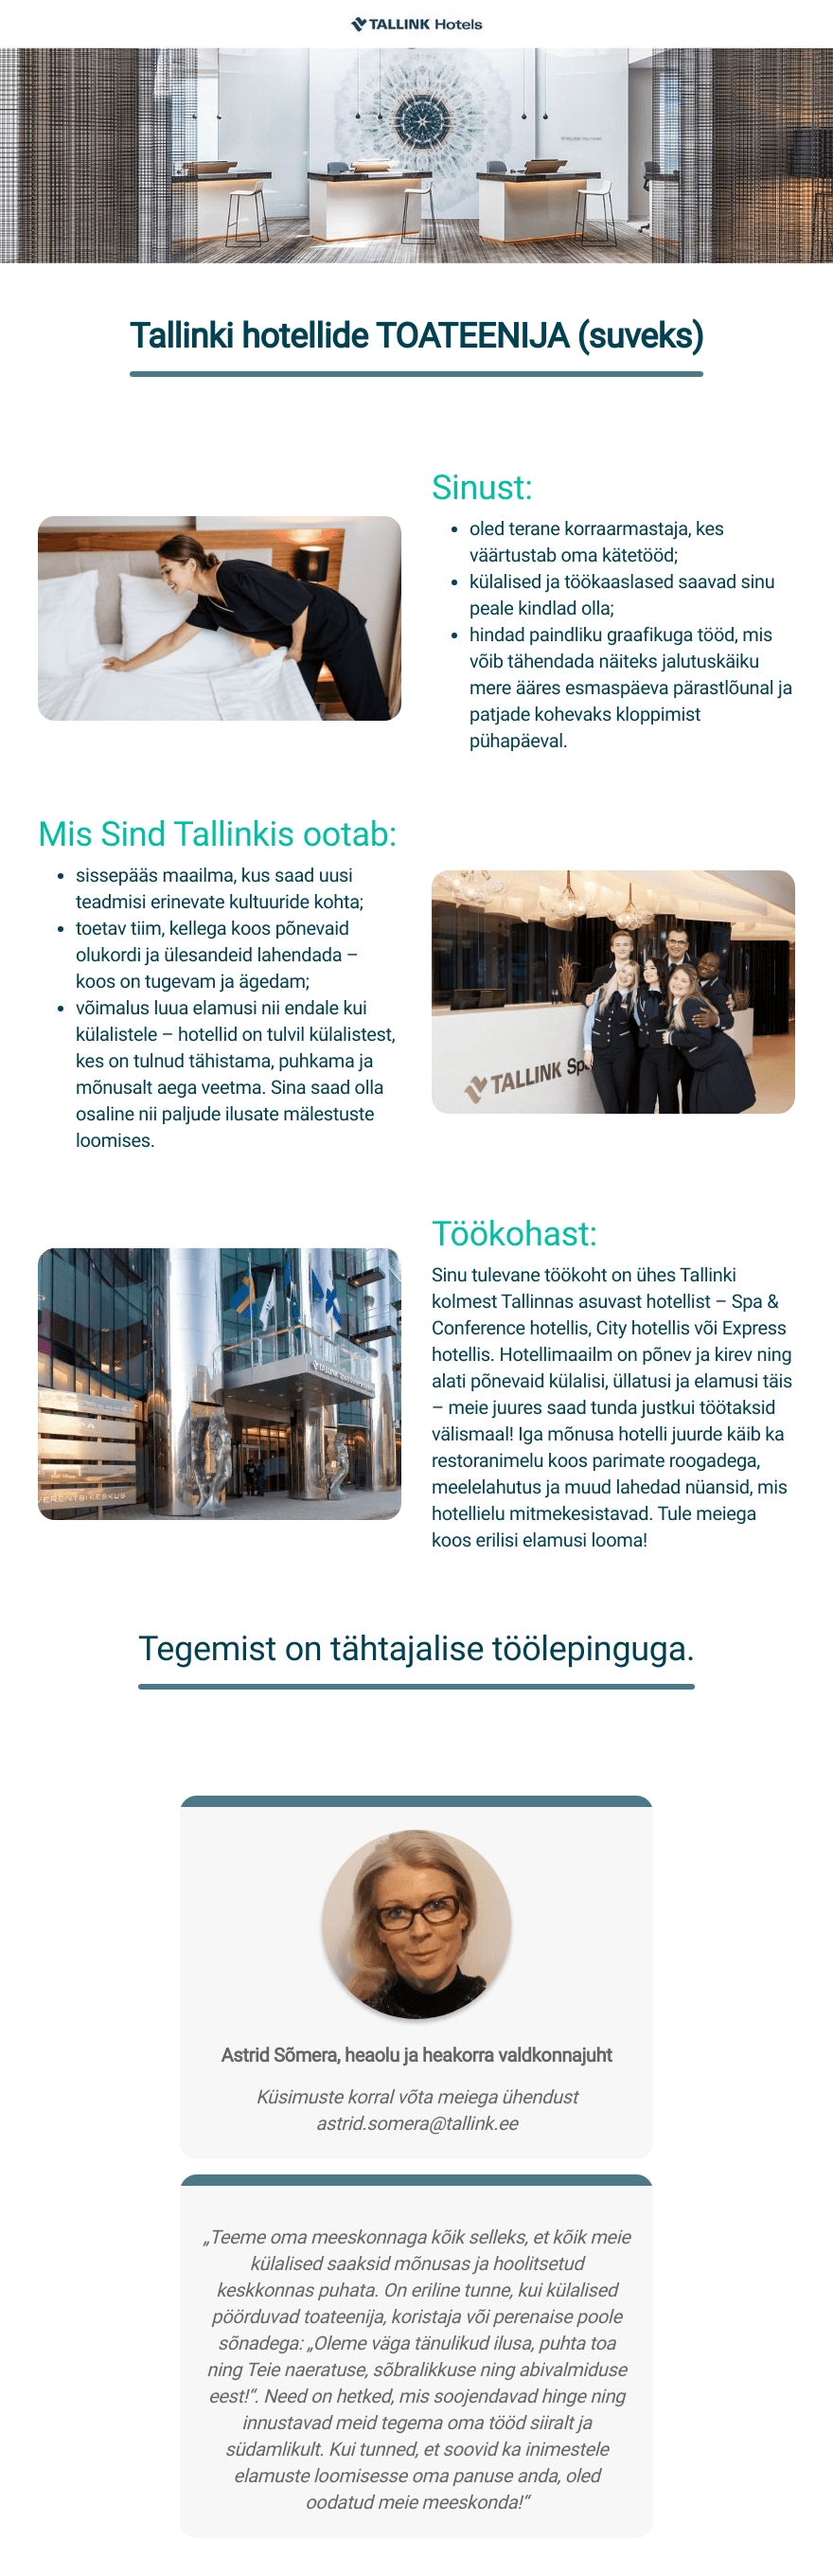 Tallink Grupp AS Tallinki hotellide toateenija (suveks)